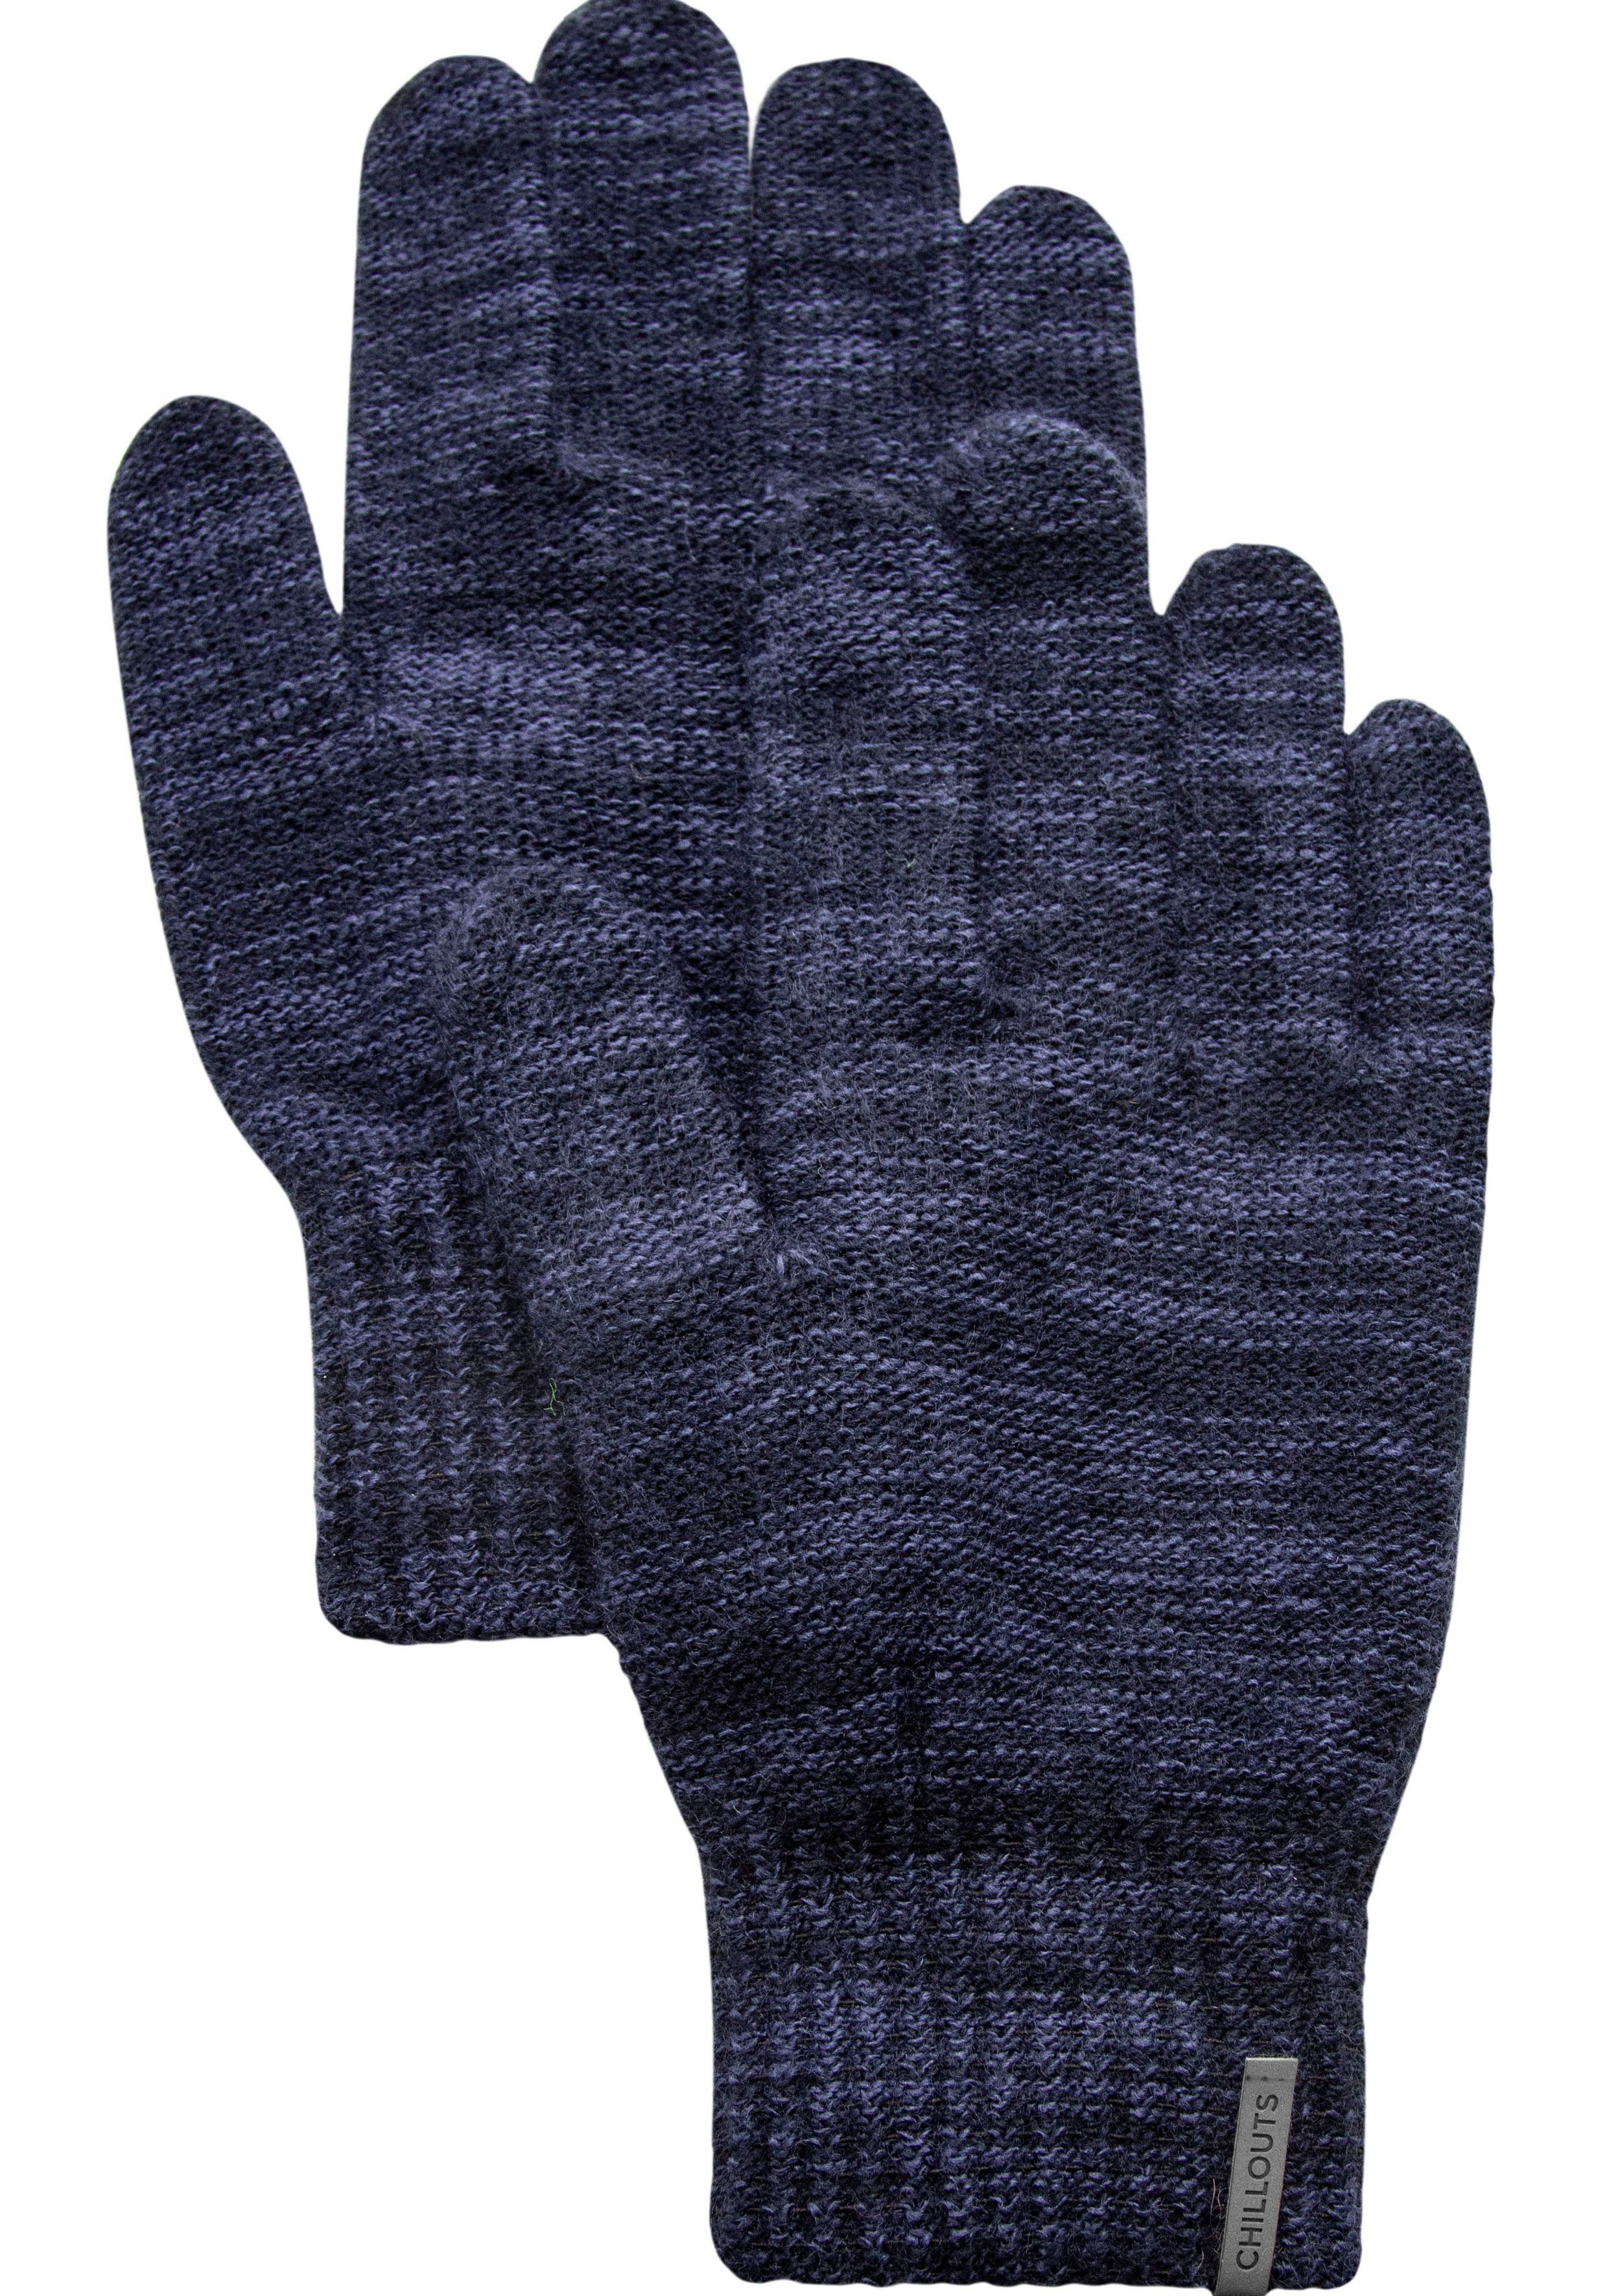 chillouts Strickhandschuhe Perry Glove wärmend melange navy Fingerhandschuhe gestrickt